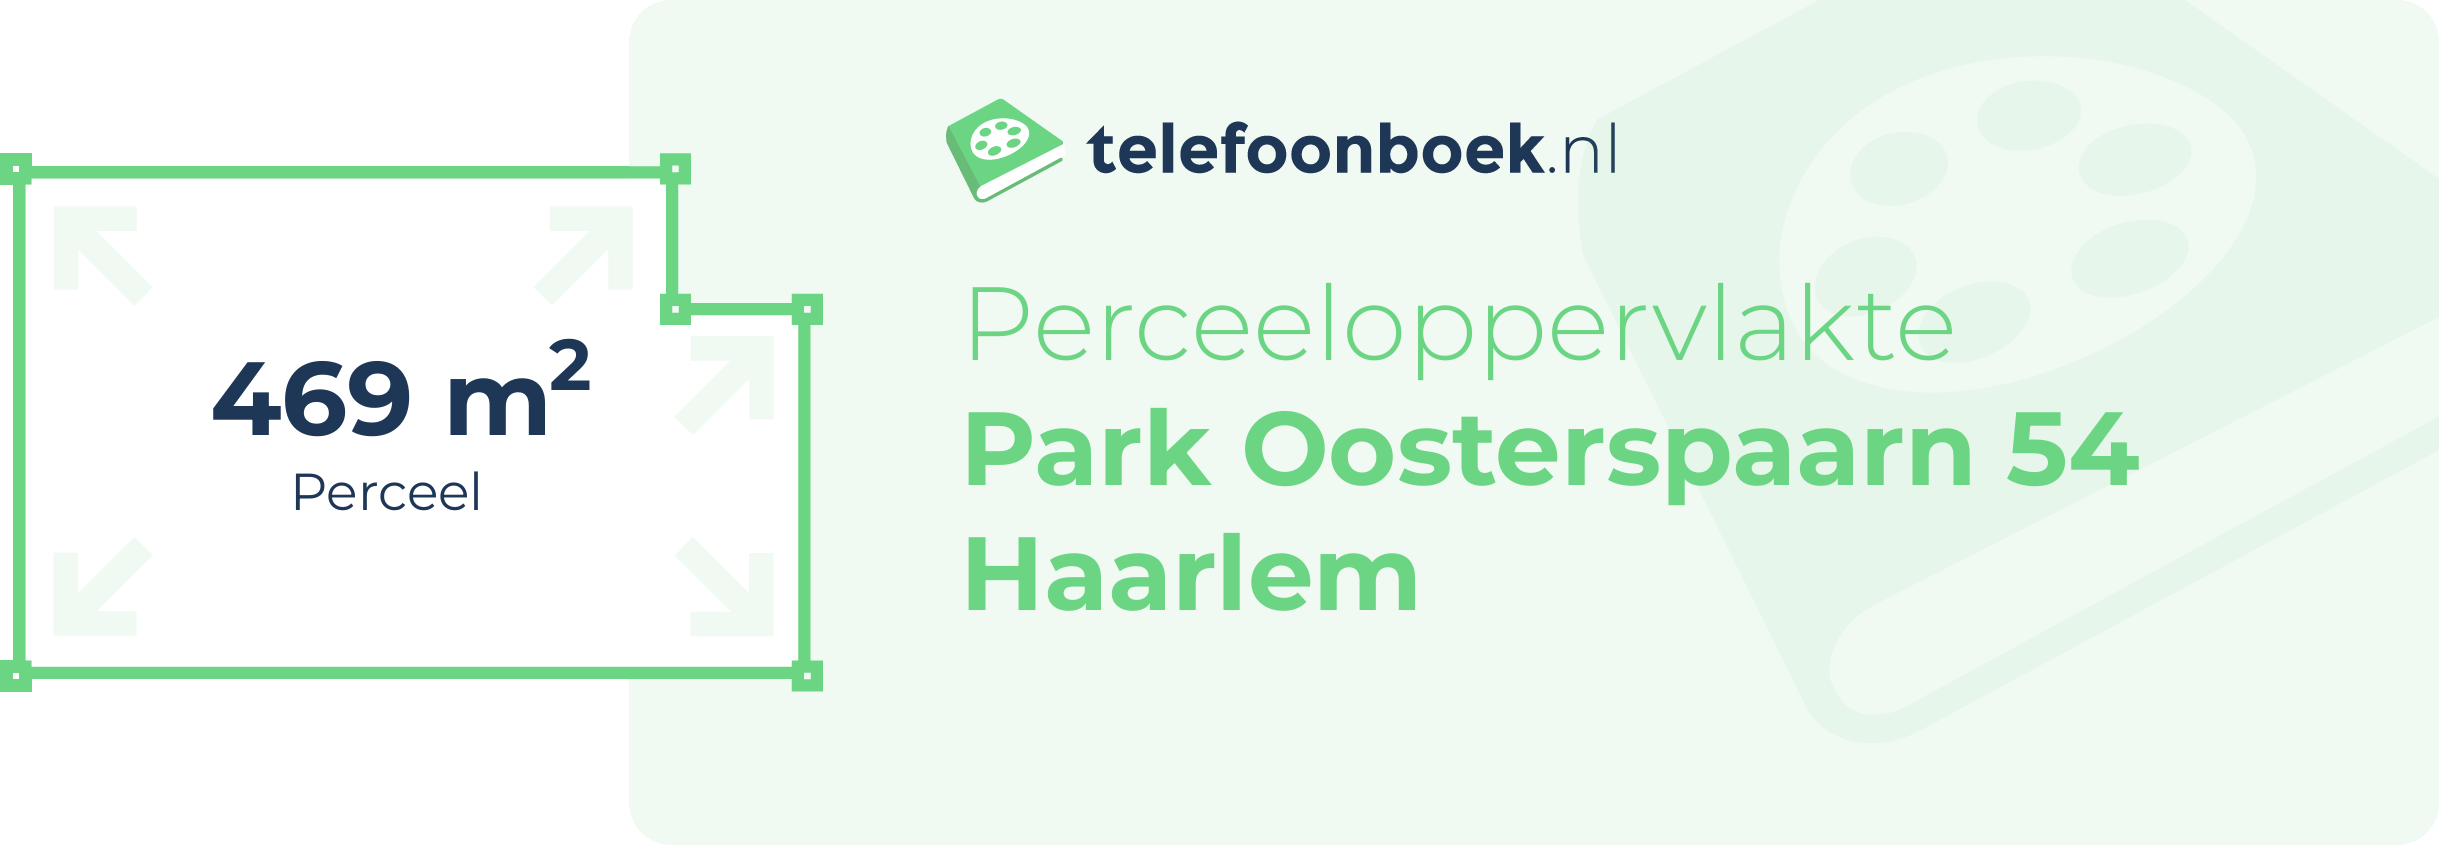 Perceeloppervlakte Park Oosterspaarn 54 Haarlem